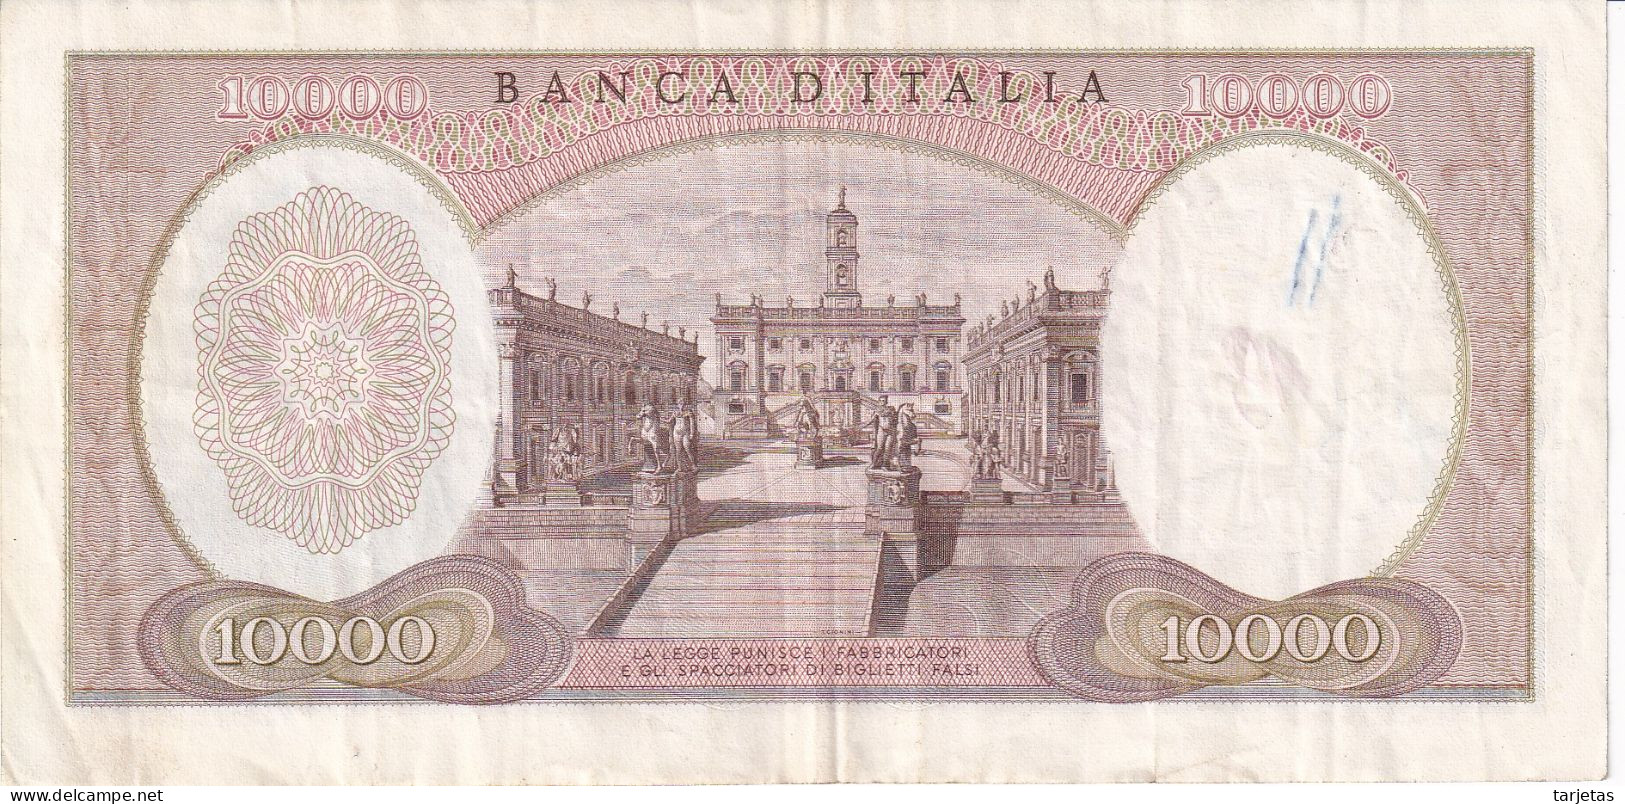 BILLETE DE ITALIA DE 10000 LIRAS DEL AÑO 1973 DE MICHELANGELO (BANKNOTE) - 10000 Liras